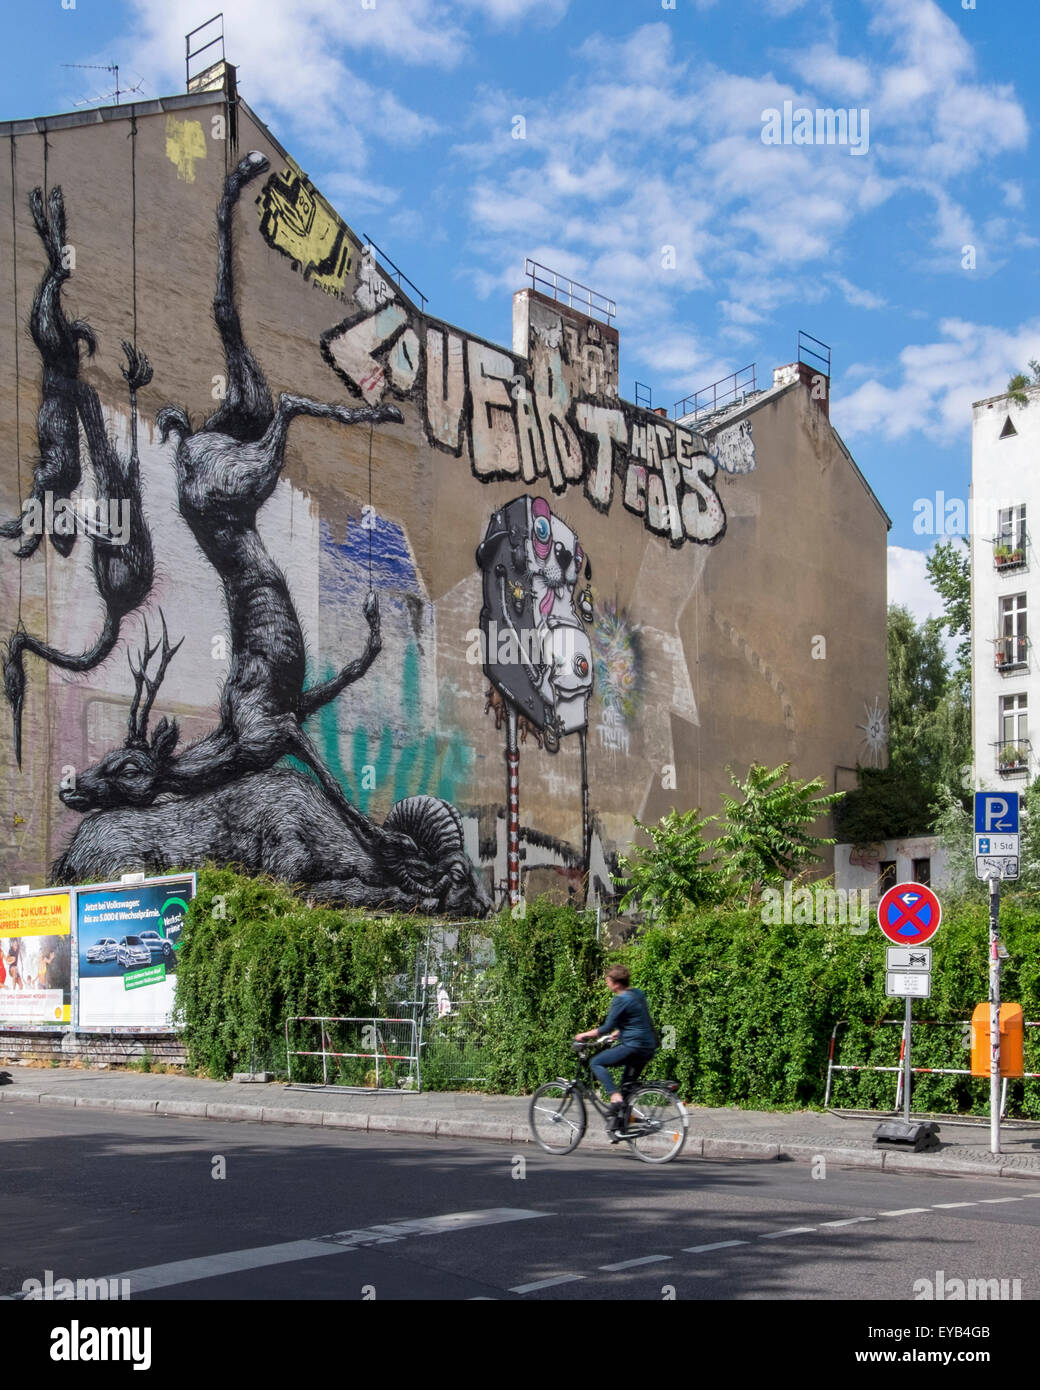 Animales muertos en blanco y negro colgando en el lateral del edificio, mural del artista de calle Roa de Gante en Kreuzberg, Berlín Foto de stock